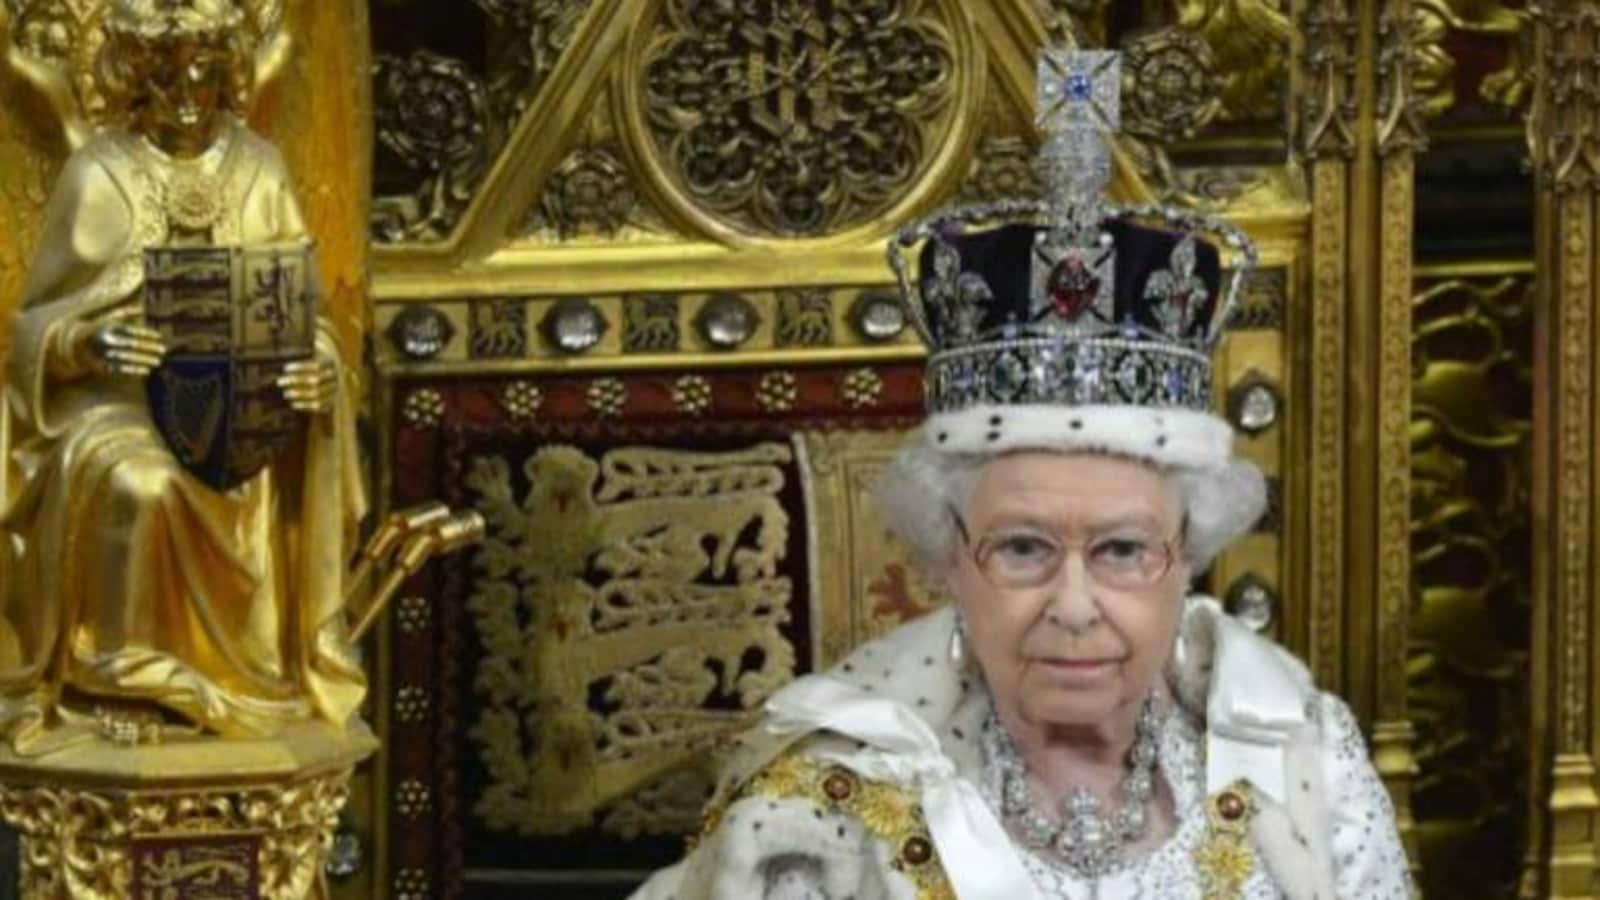 What will happen to the Kohinoor diamond after Queen Elizabeth's death?